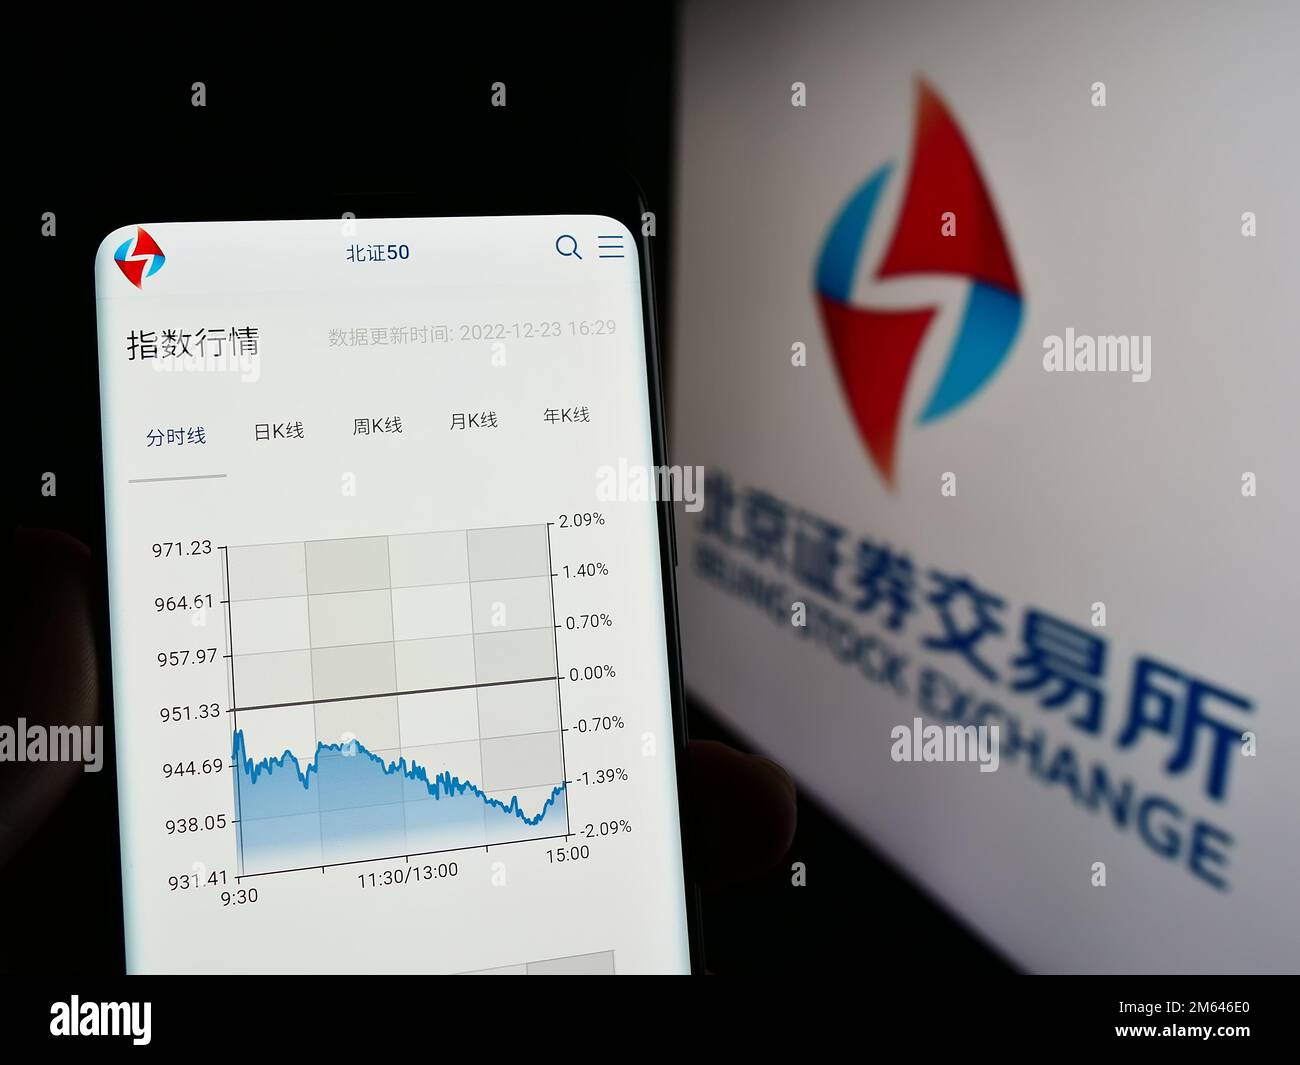 Personne tenant un smartphone avec la page web de la société chinoise Beijing stock Exchange (BSE) à l'écran avec le logo. Concentrez-vous sur le centre de l'écran du téléphone. Banque D'Images